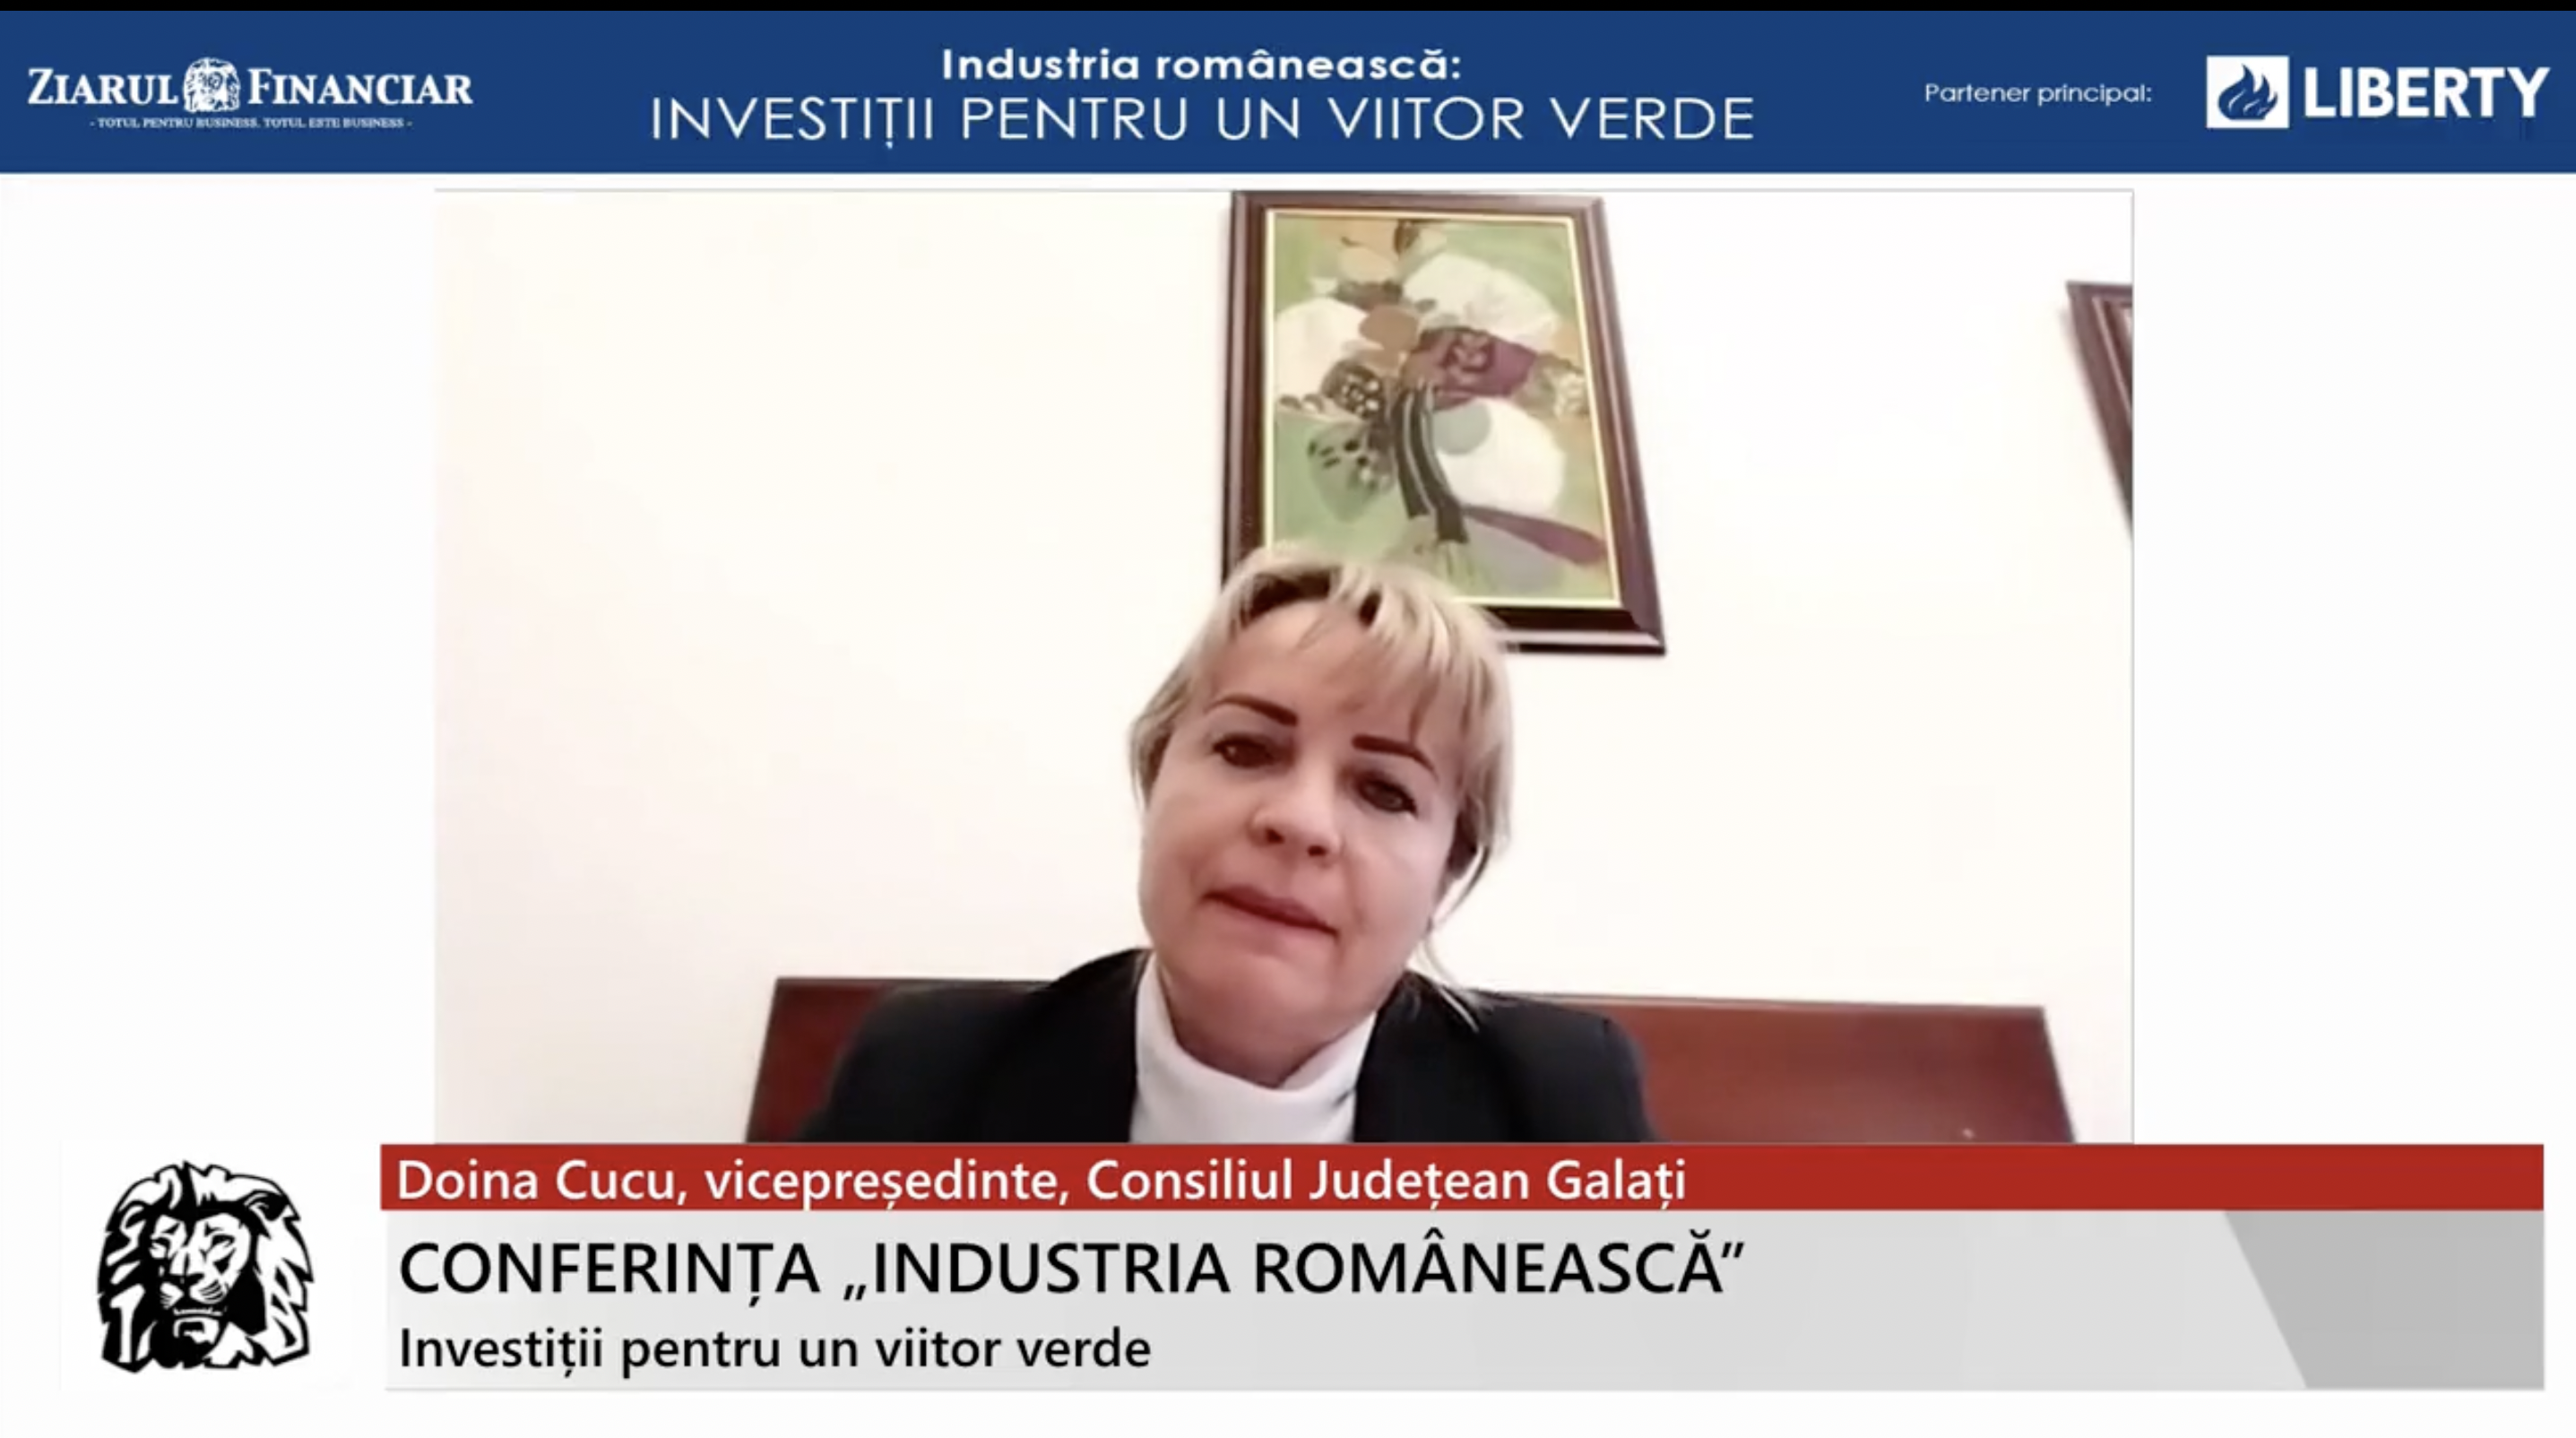 Doina Cucu, vicepreşedinte, Consiliul Judeţean Galaţi: Avem nevoie de foarte multe investiţii. Galaţiul are nevoie în primul rând de dezvoltarea infrastructurii şi de conectivitate